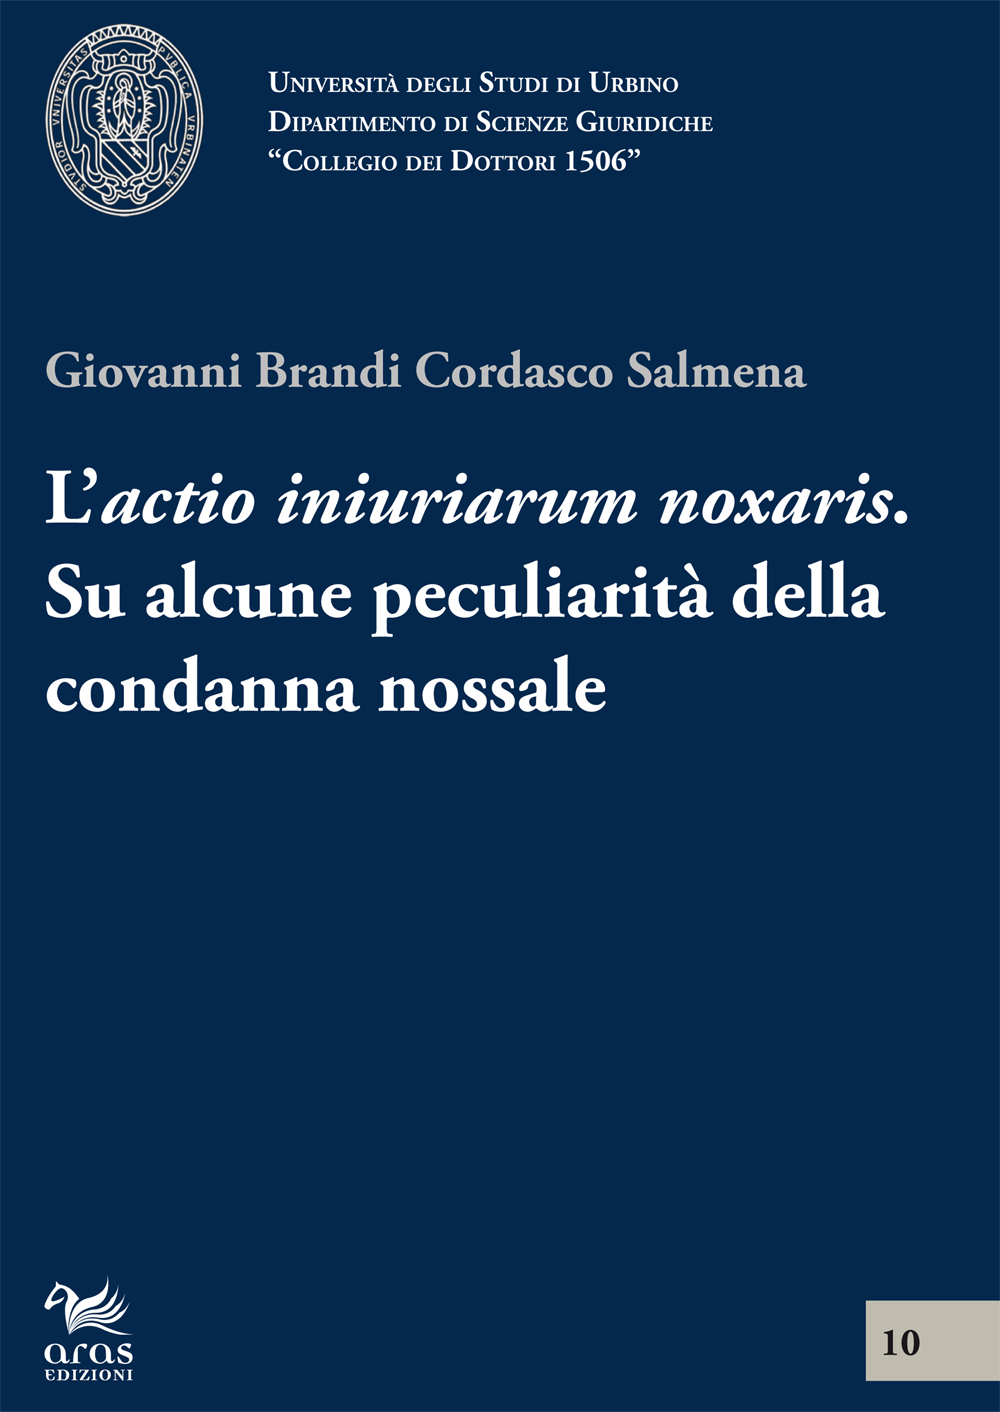 E-book, L'actio inuriarium noxalis : su alcune peculiarità della condanna nossale, Brandi, Giovanni, Aras